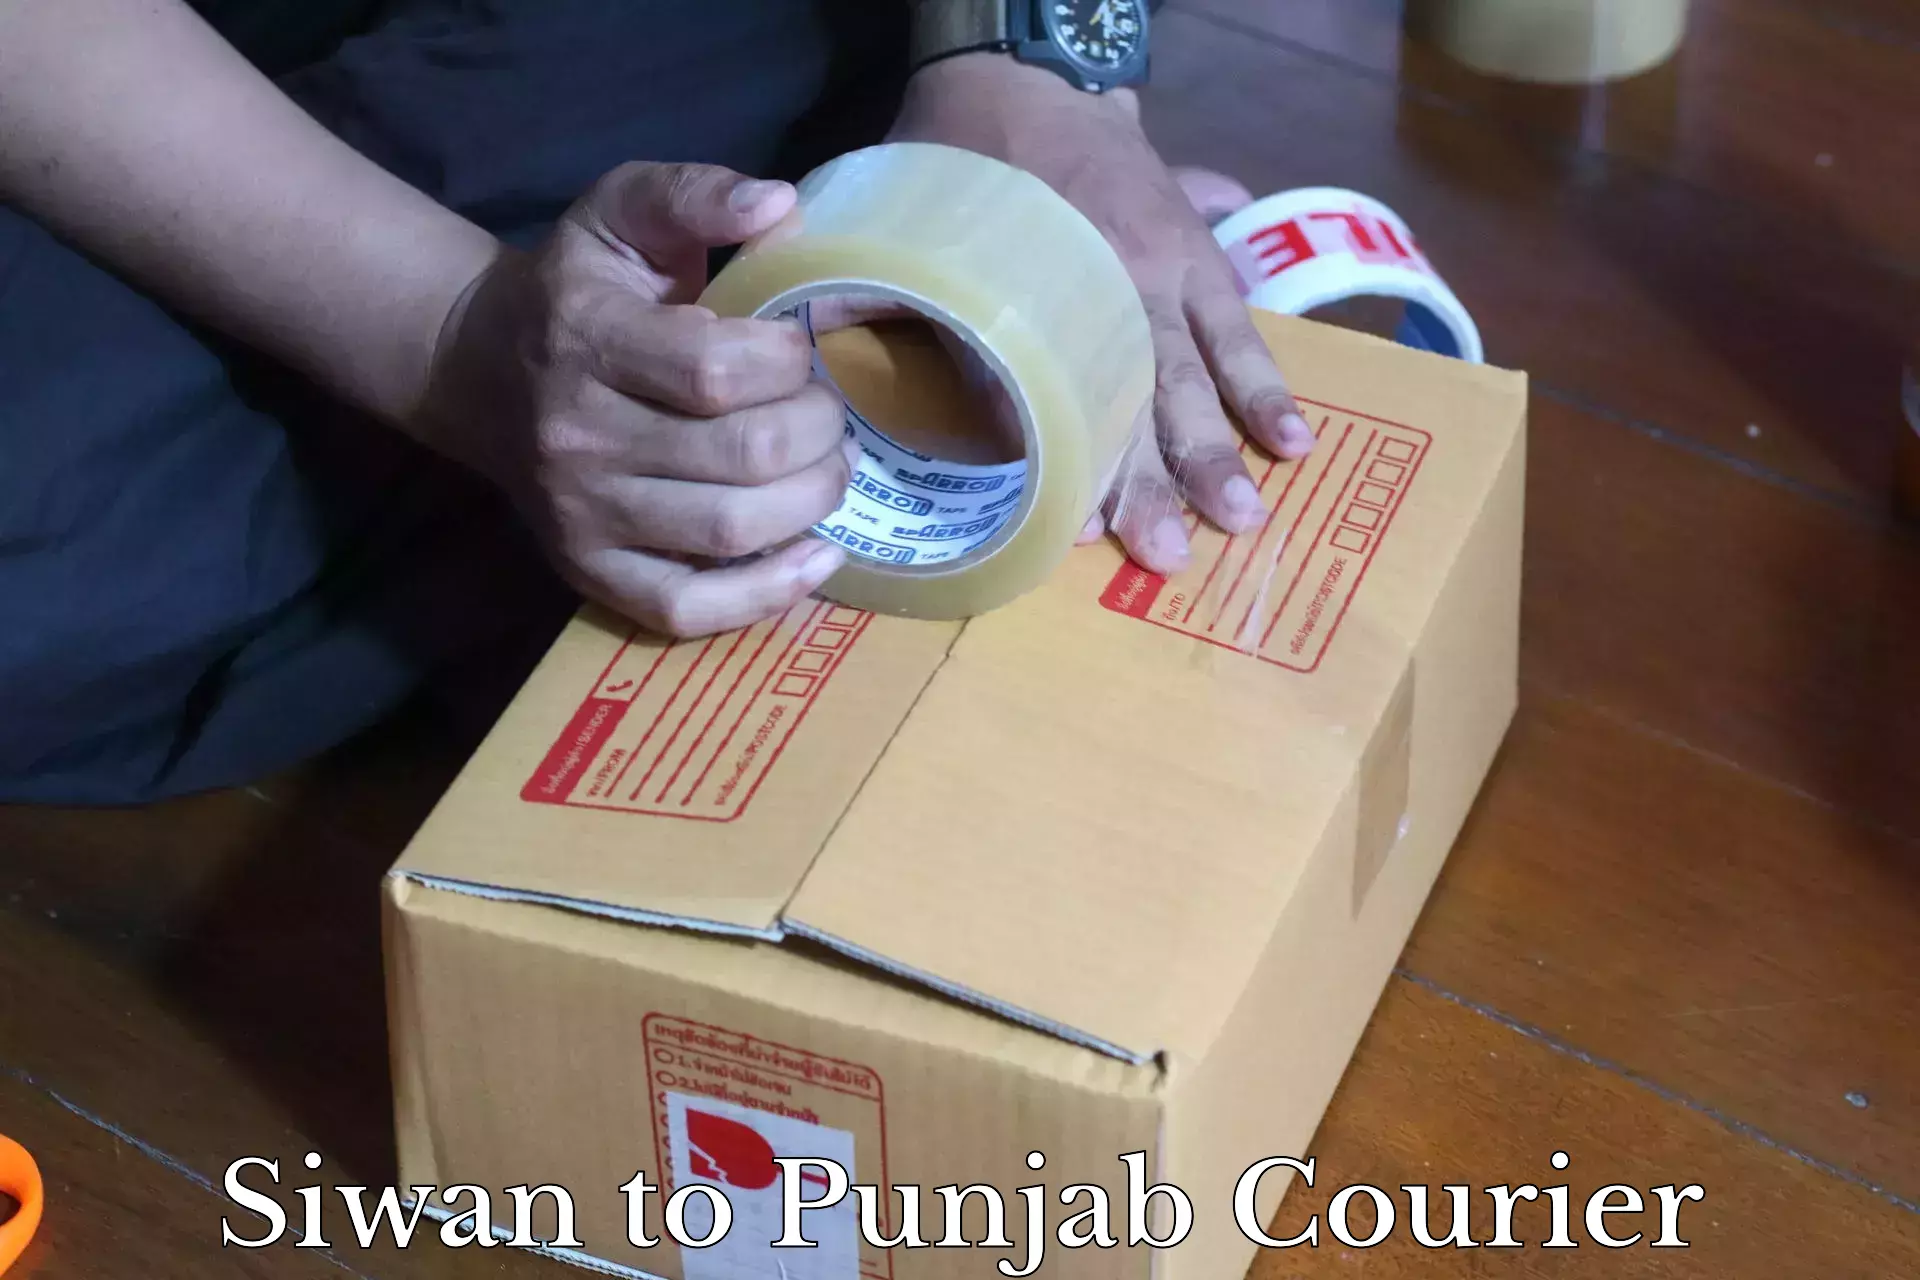 Urban courier service Siwan to Punjab